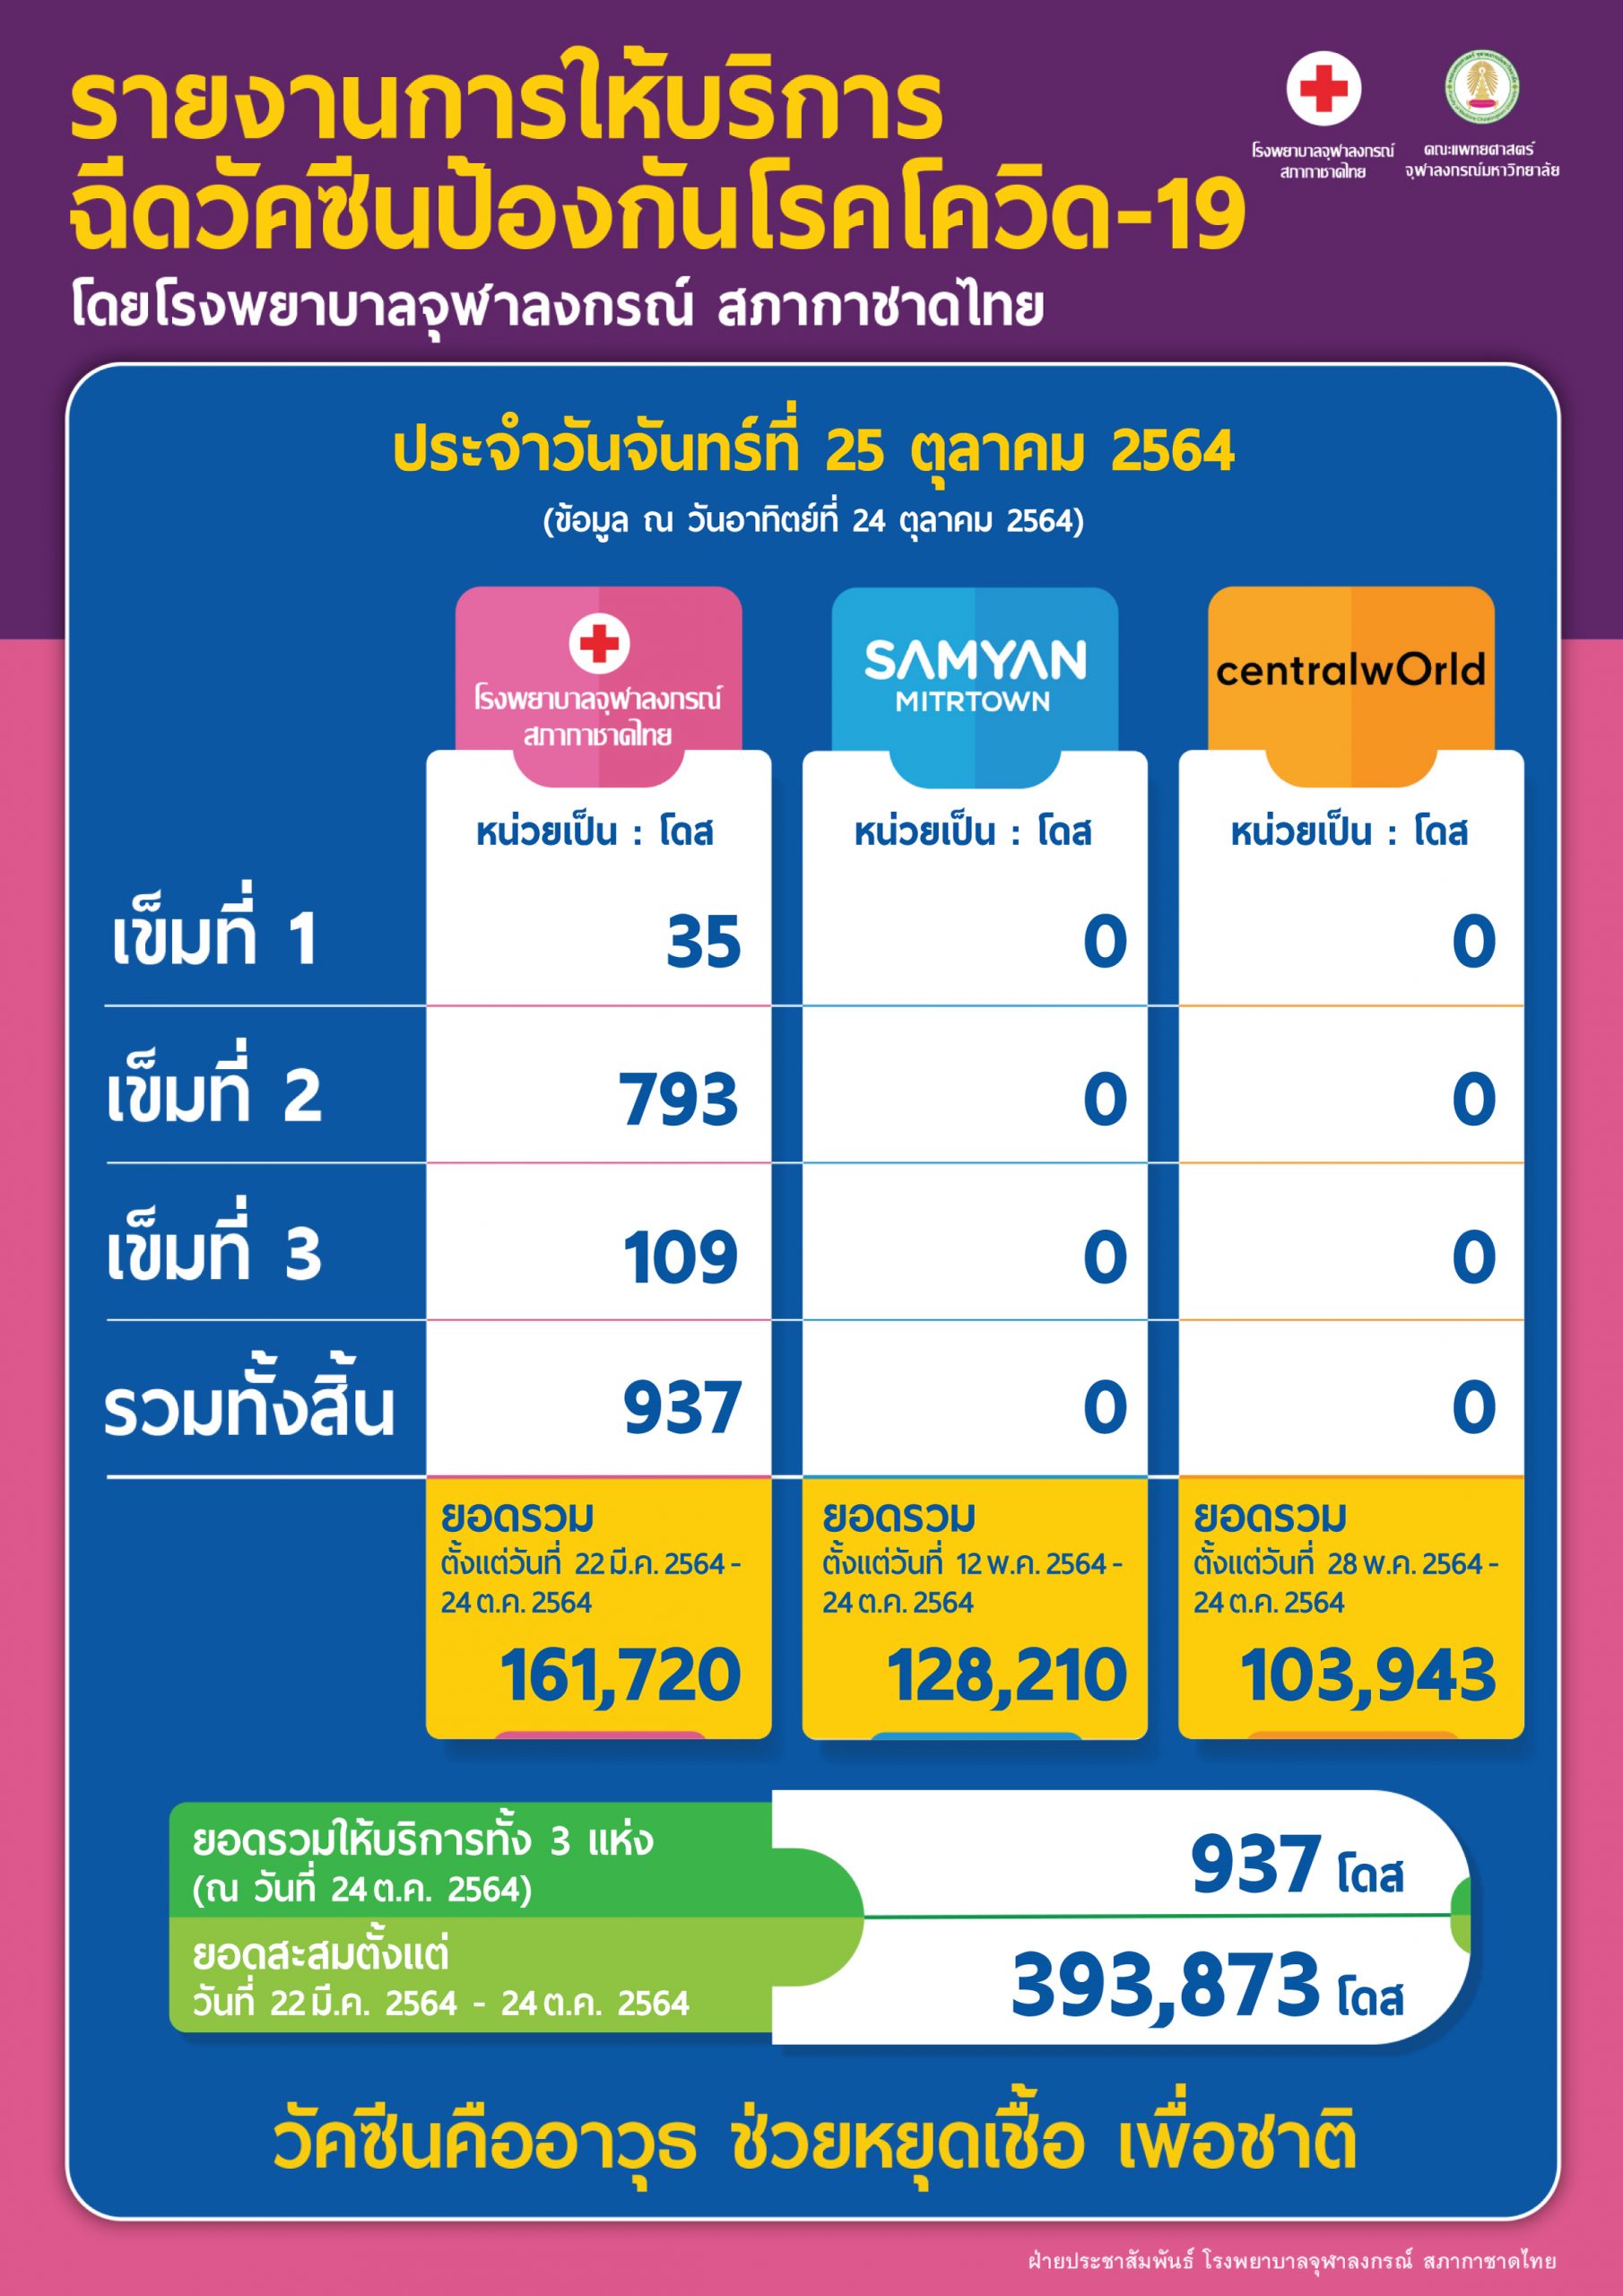 รายงานการให้บริการฉีดวัคซีนป้องกันโรคโควิด-19 โดยโรงพยาบาลจุฬาลงกรณ์ สภากาชาดไทย ประจำวันจันทร์ที่ 25 ตุลาคม 2564